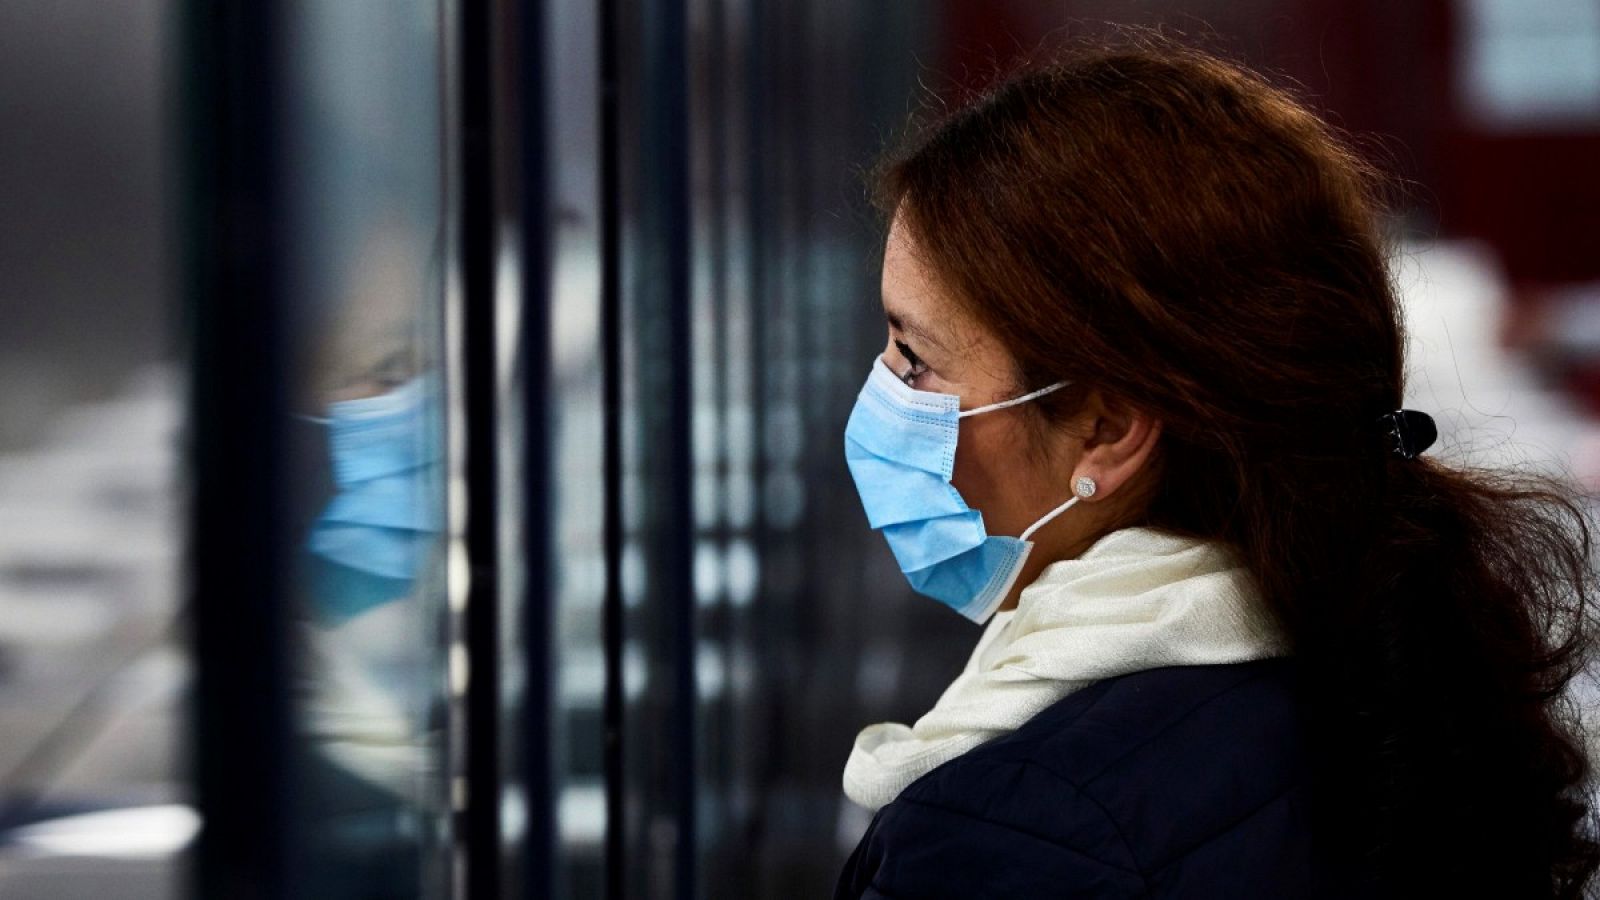 Coronavirus | El Gobierno controlará los precios de las mascarillas, geles y guantes durante la crisis del coronavirus